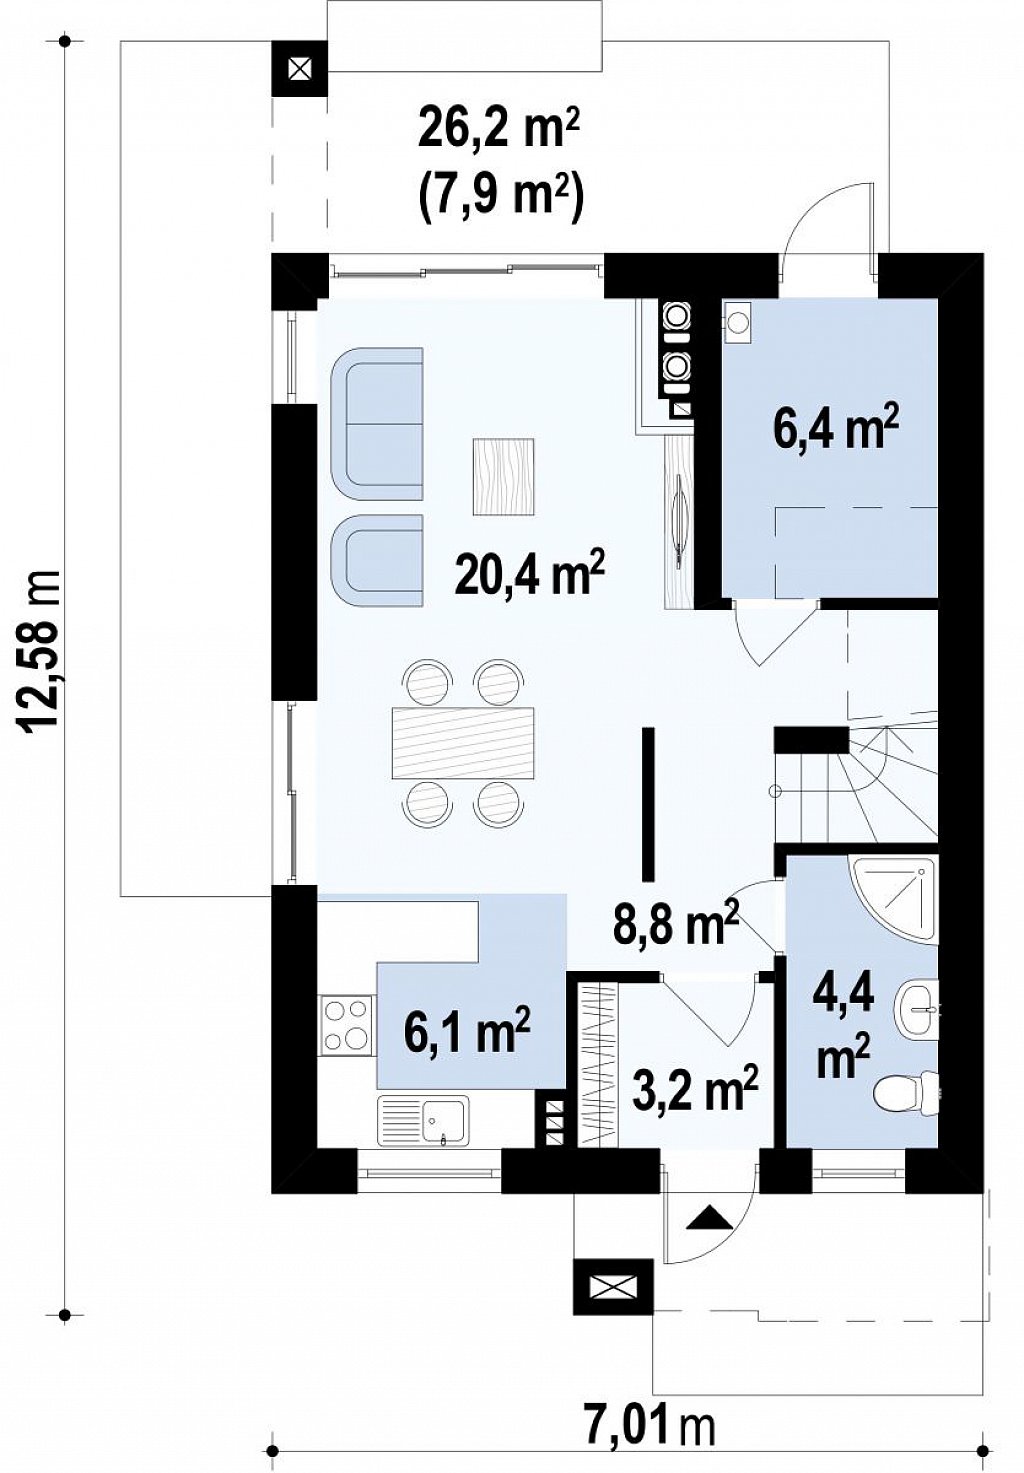 Небольшой двухэтажный дом с современными архитектурными элементами, подходящий для узкого участка. план помещений 1